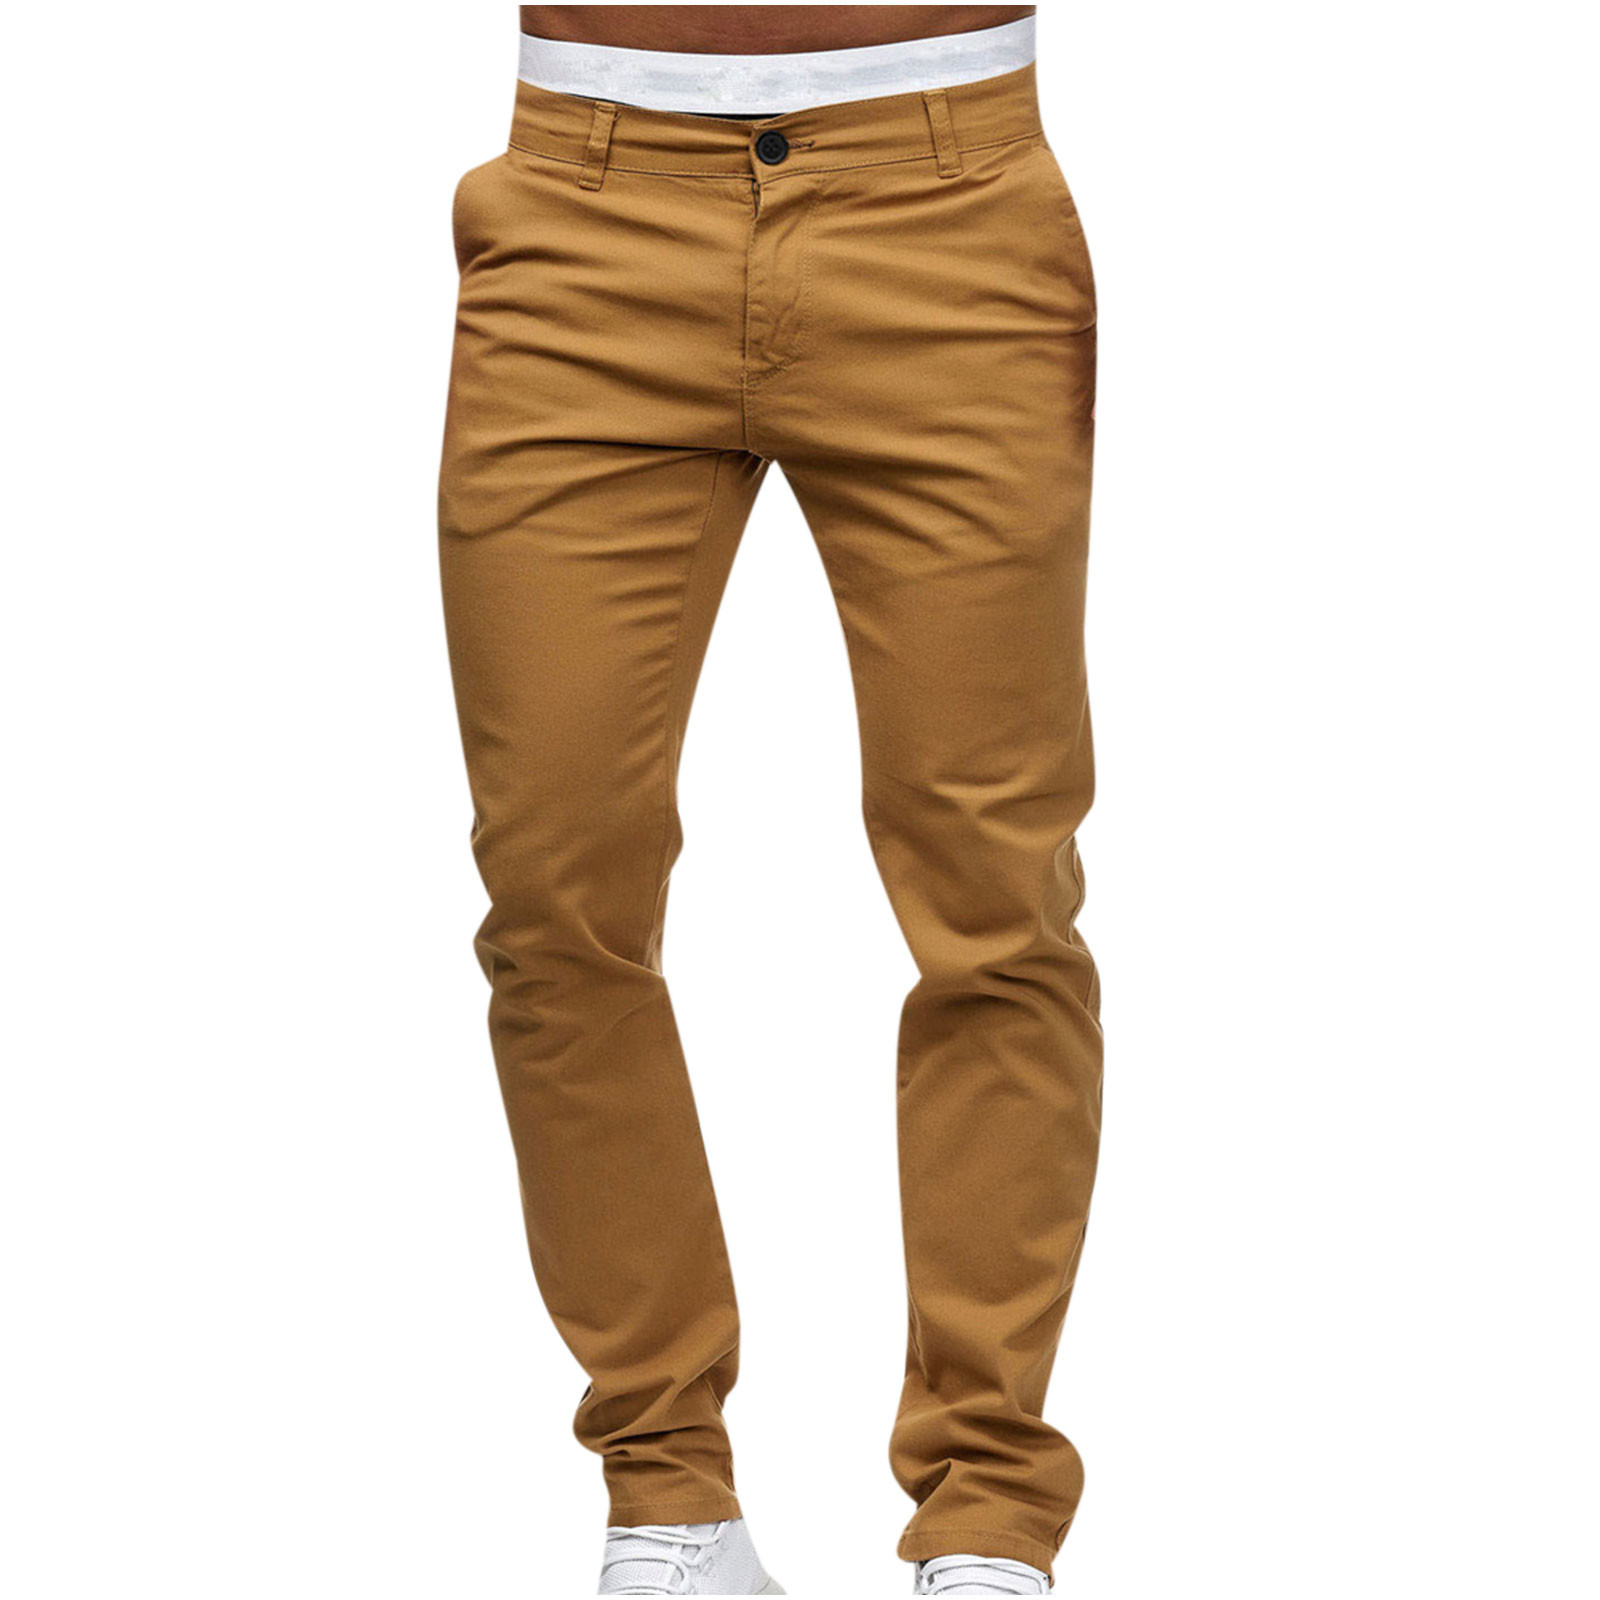 VSSSJ Men's Big and Tall Pants Solid Color Button Ziper Elastic Waist ...